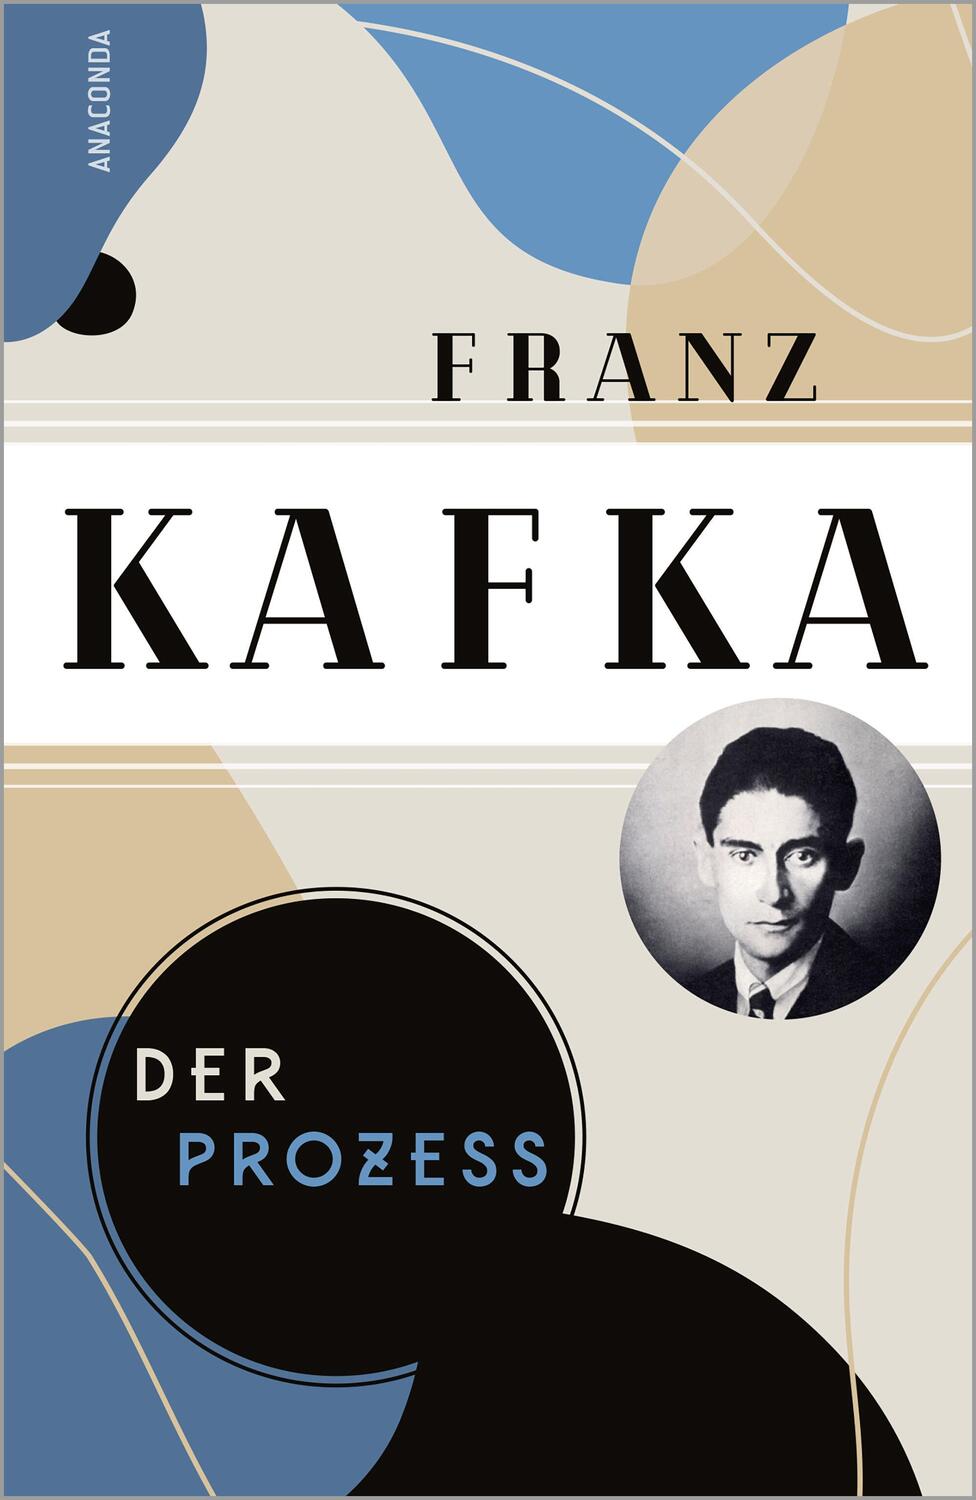 Bild: 9783730613436 | Franz Kafka, Die großen Werke (Die Erzählungen - Der Verschollene -...